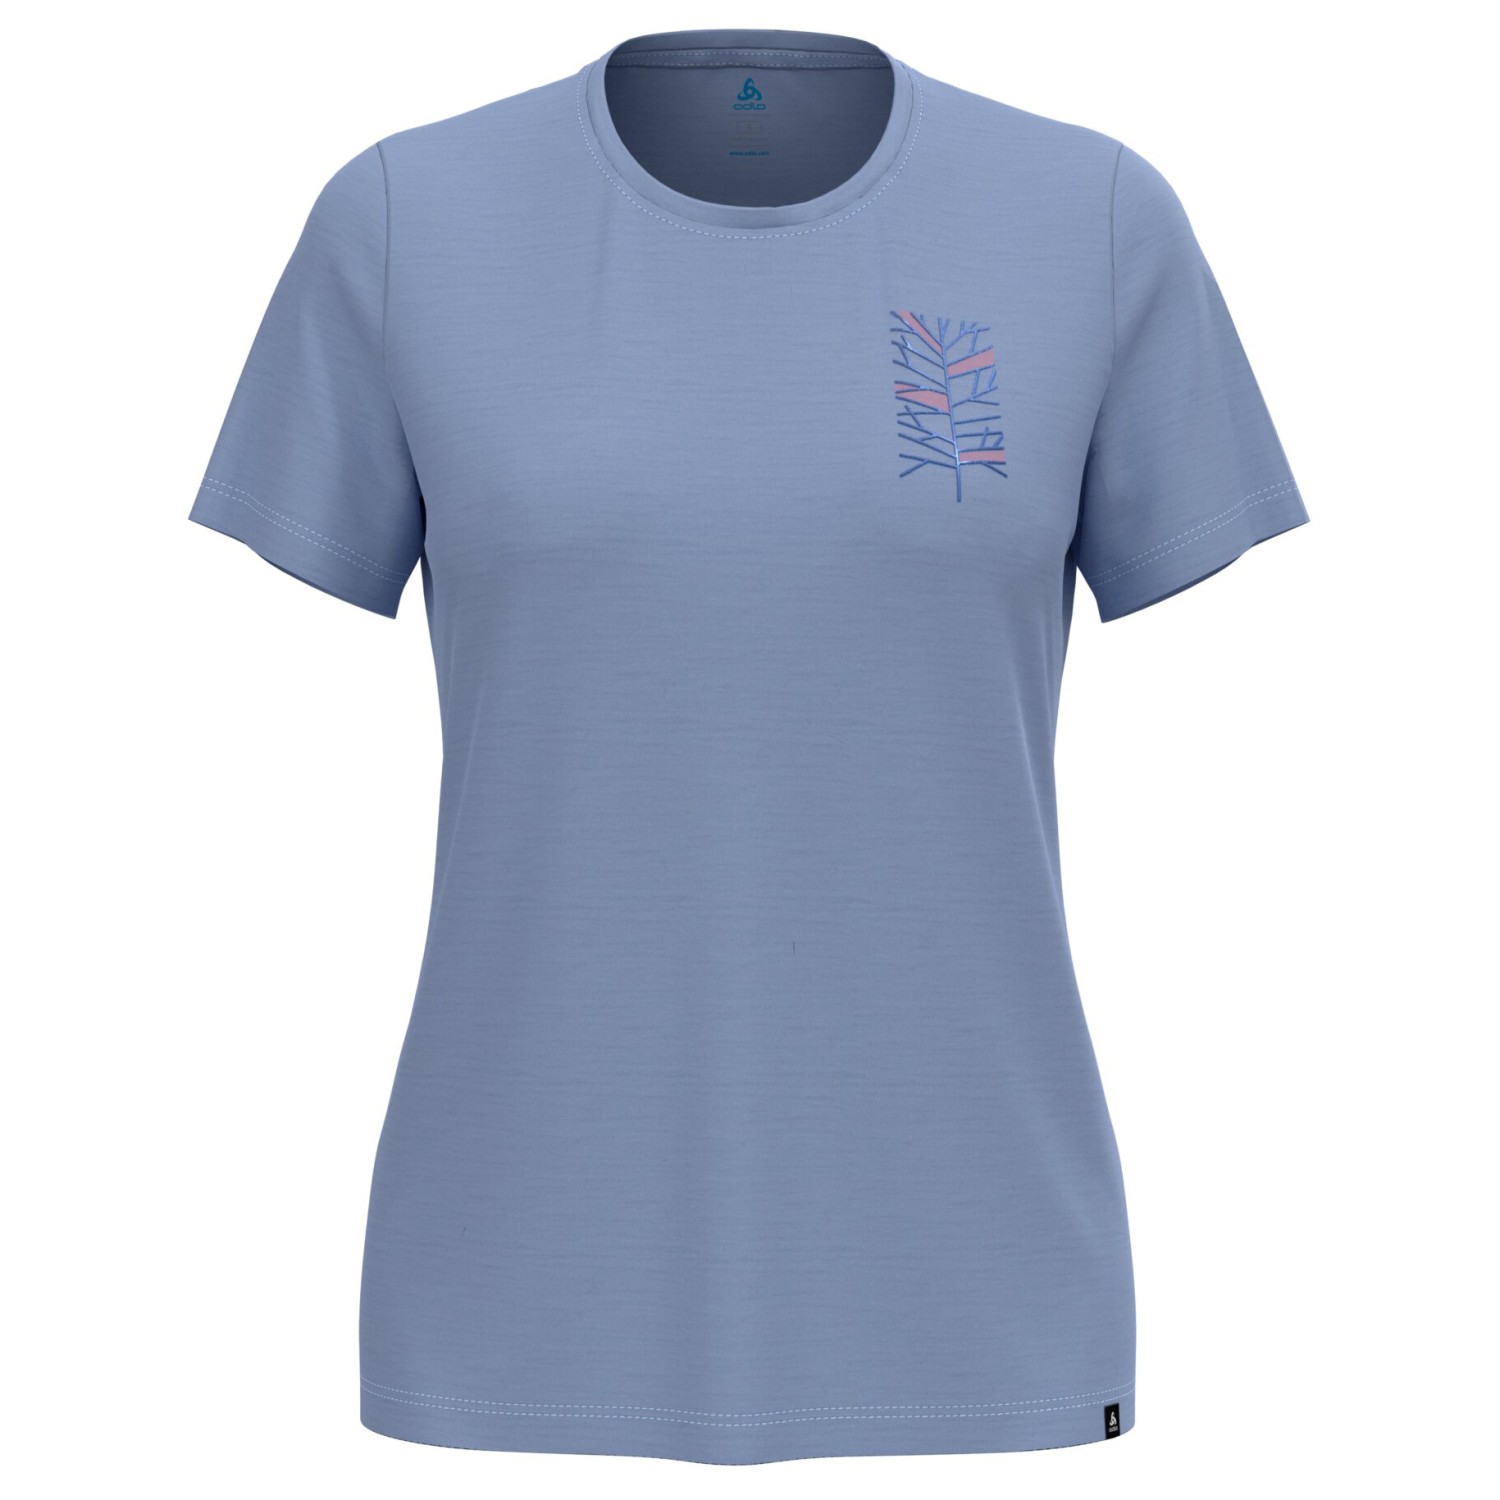 Рубашка из мериноса Odlo Women's Ascent Merino 160 Tree Crew Neck S/S, цвет Blue Heron